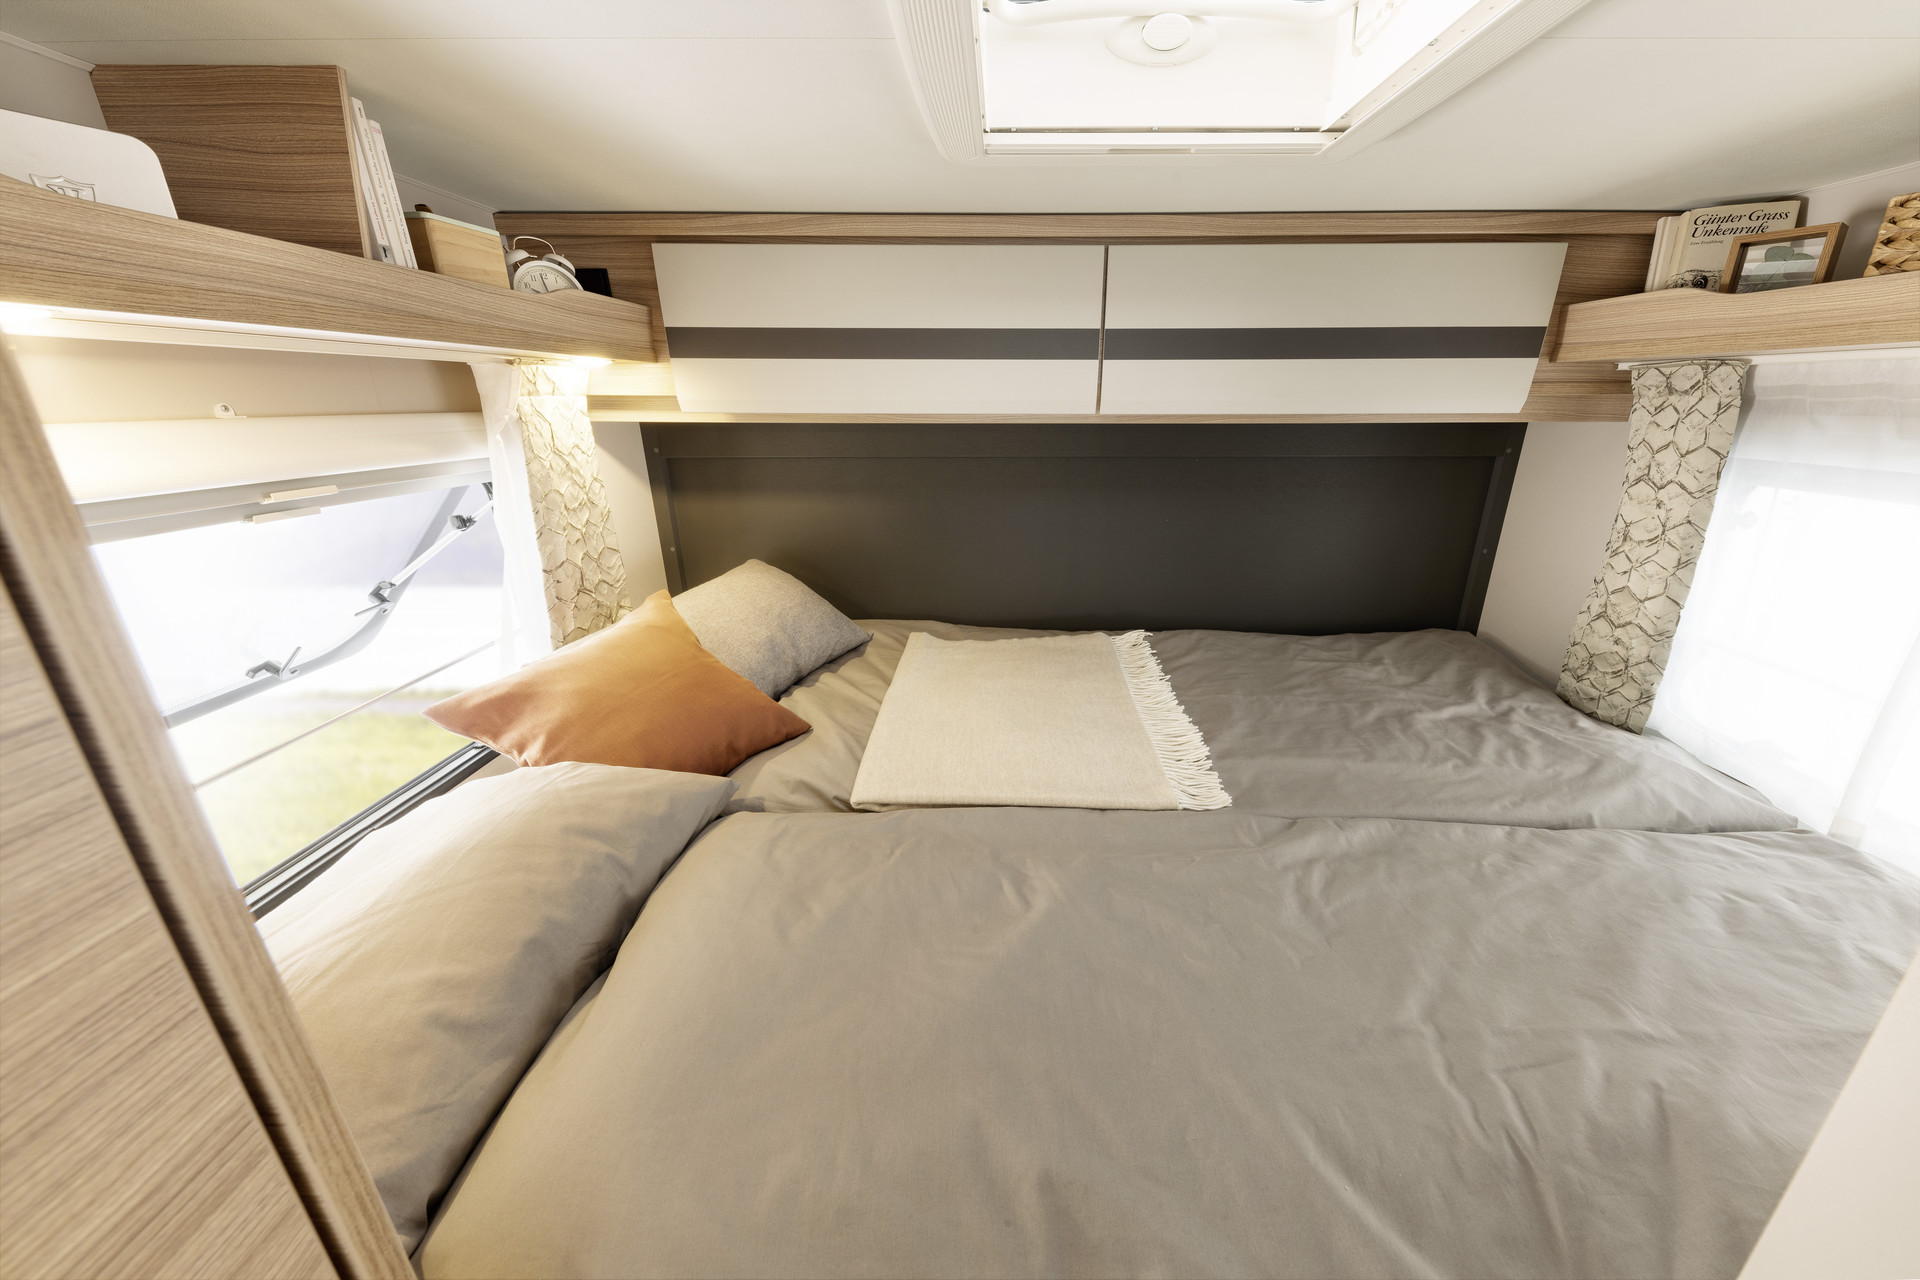 Le lit double transversal est superbe avec sa surface de couchage de 200 x 145 cm. À l’instar des lits jumeaux, il garantit un confort de sommeil parfait grâce à son matelas 7 zones thermorégulant de 150 mm d’épaisseur • T / I 1